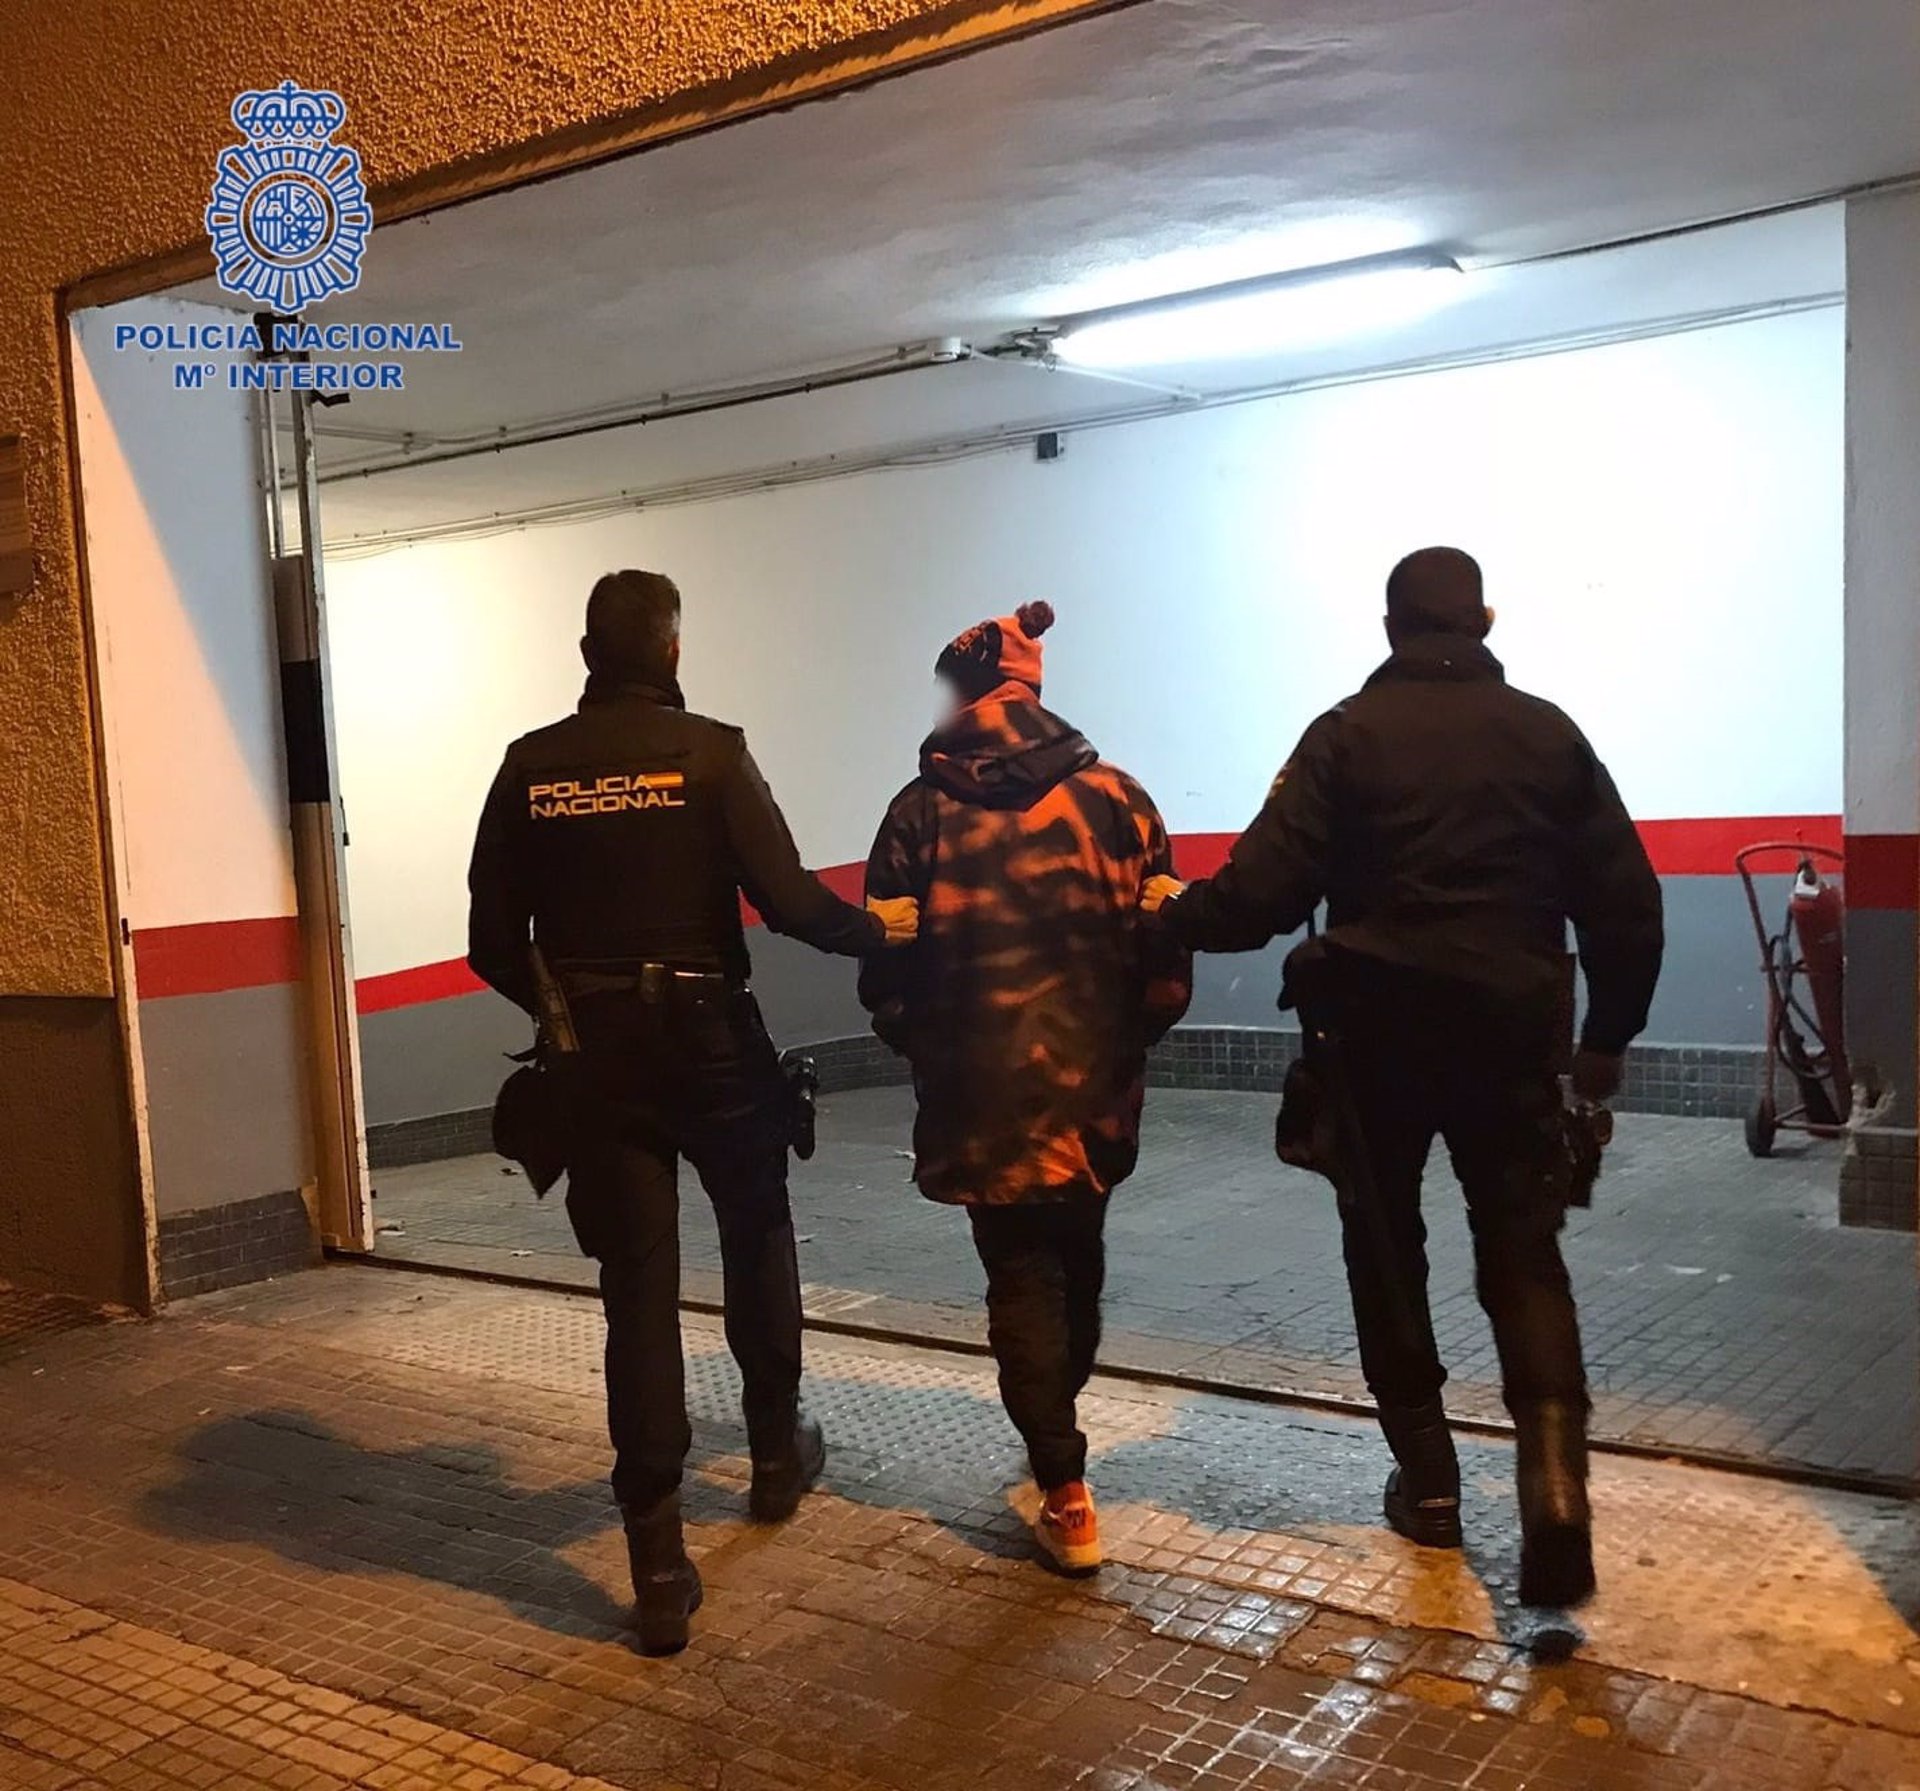 Policía Nacional escolta a uno de los detenidos por delitos contra la salud pública en el barrio de La Soledad de Palma - POLICÍA NACIONAL